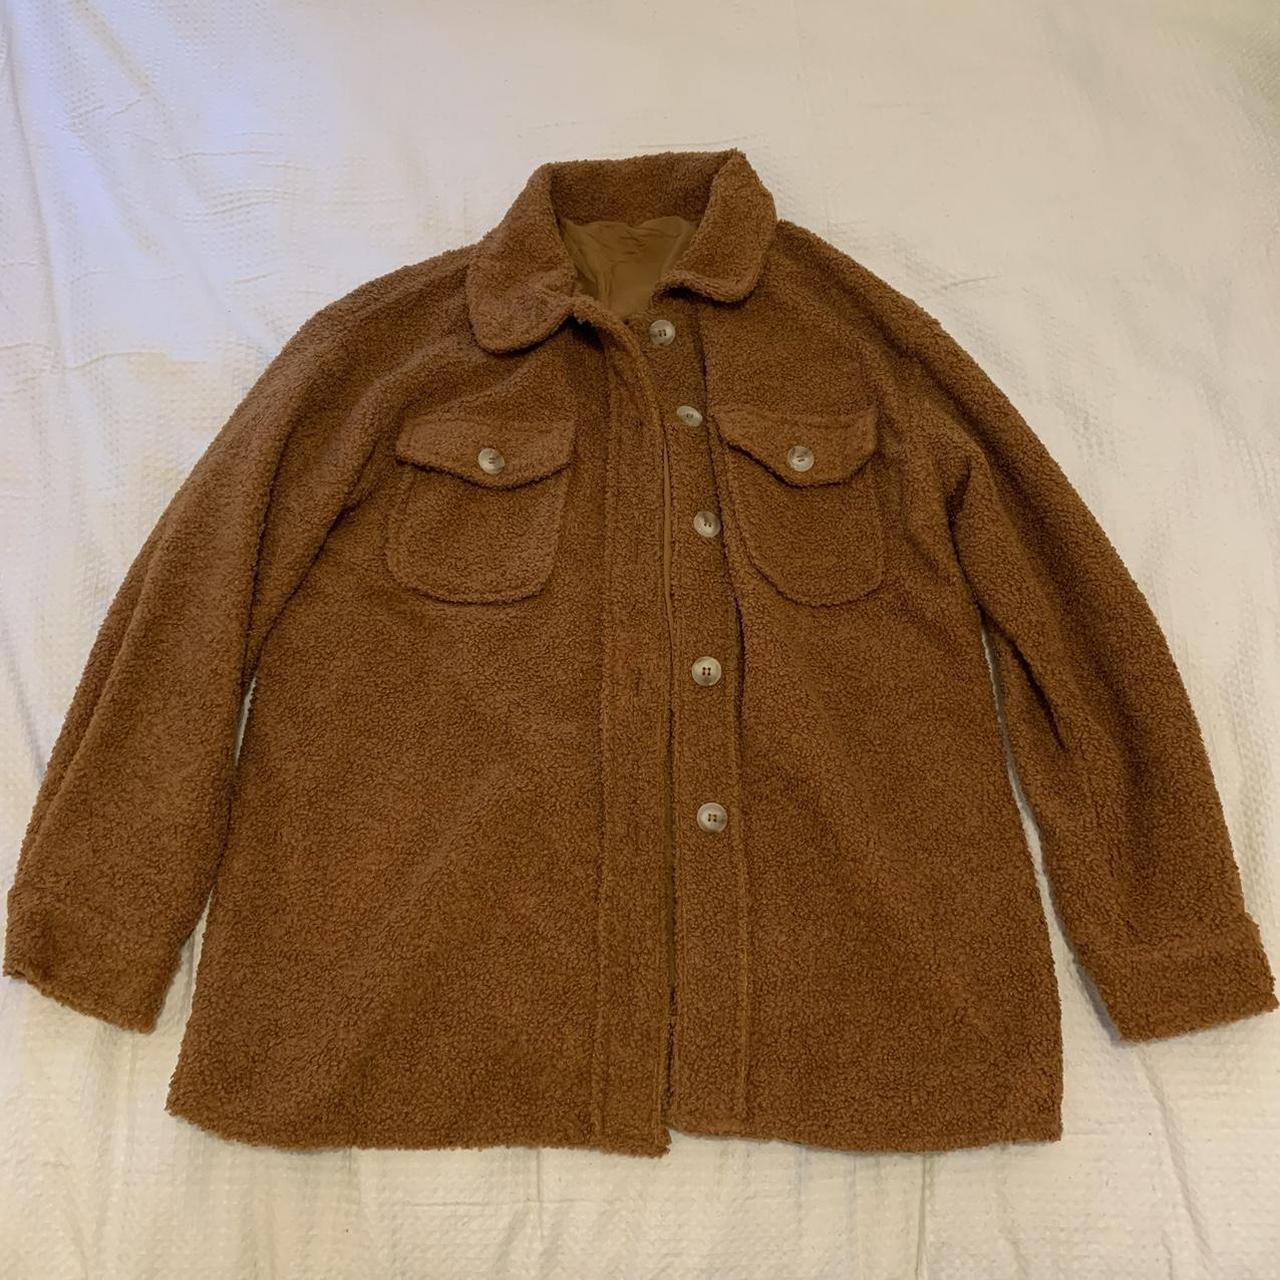 Brown teddy jacket - Depop